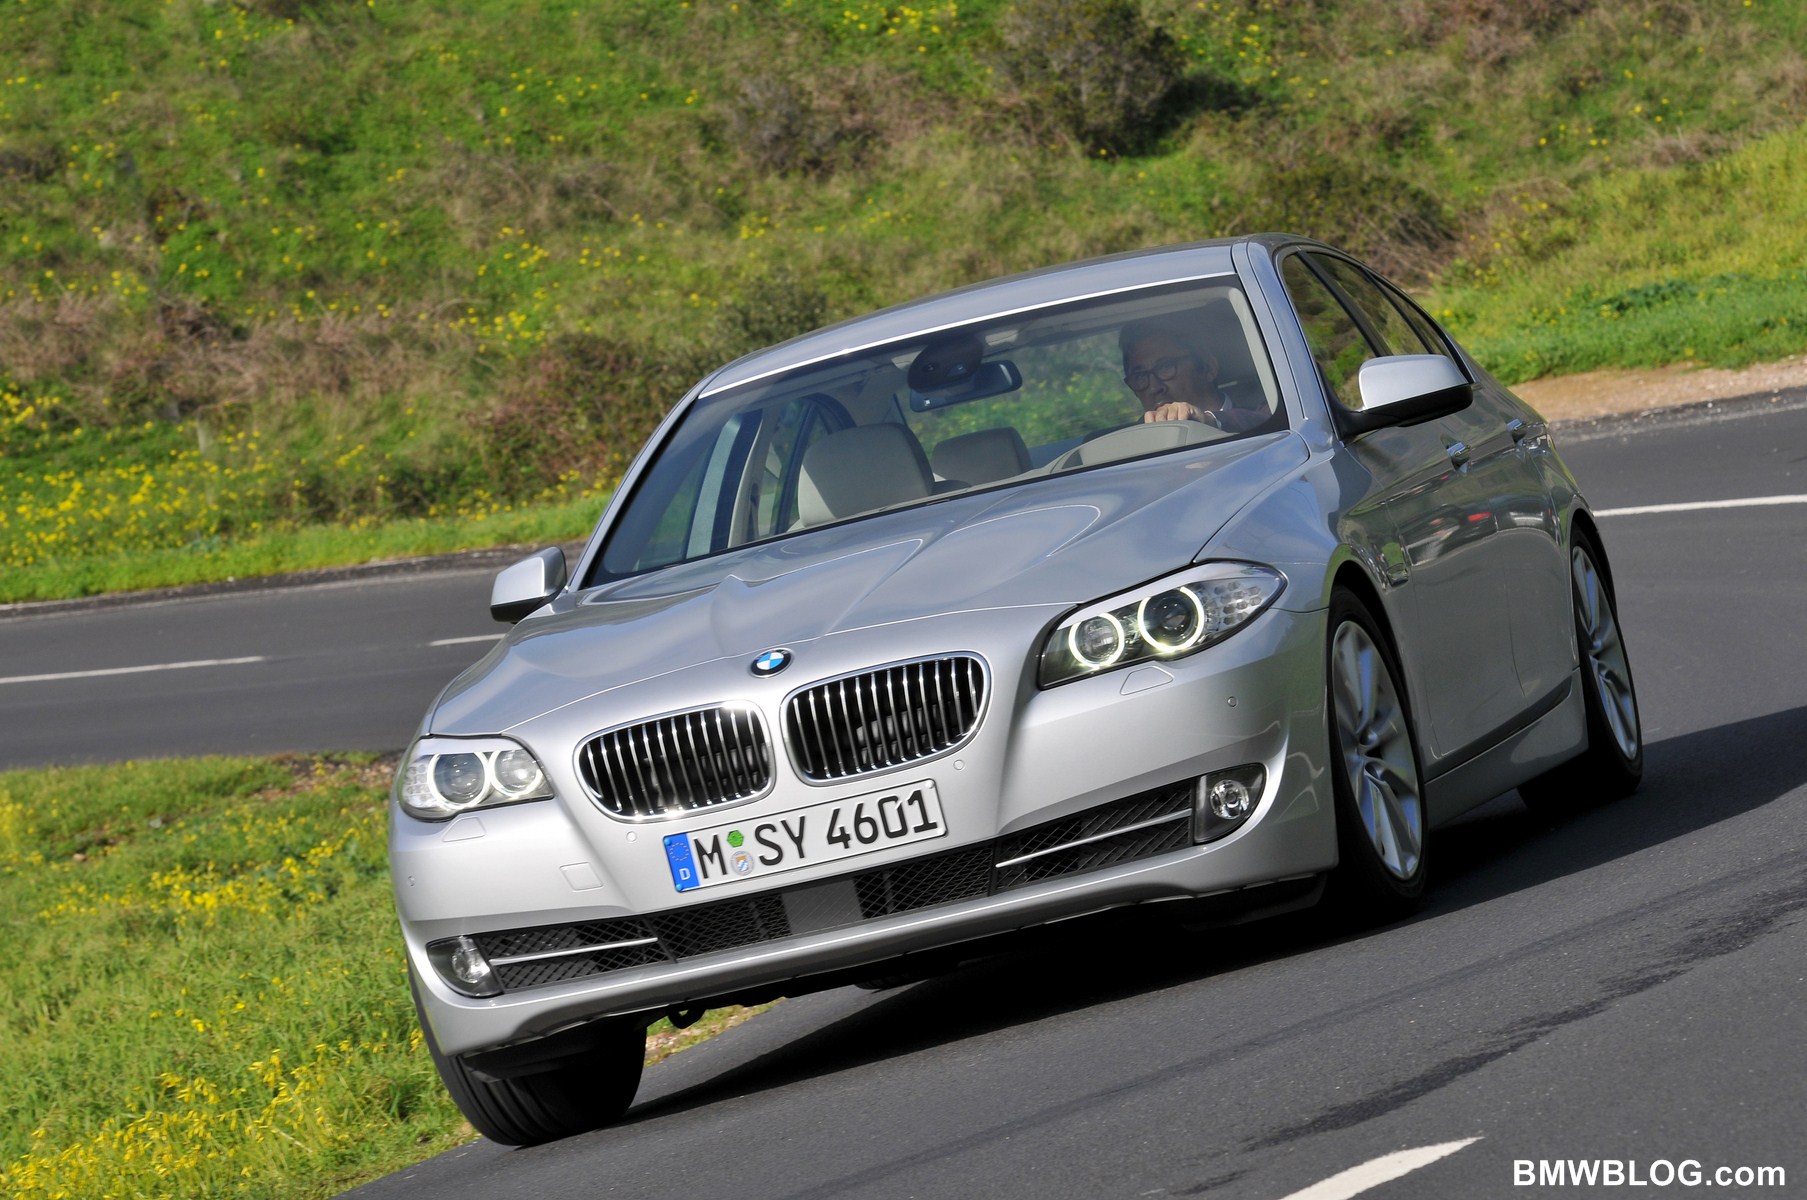 2012 BMW 528i gets the 2.0 liter four-cylinder N20 engine